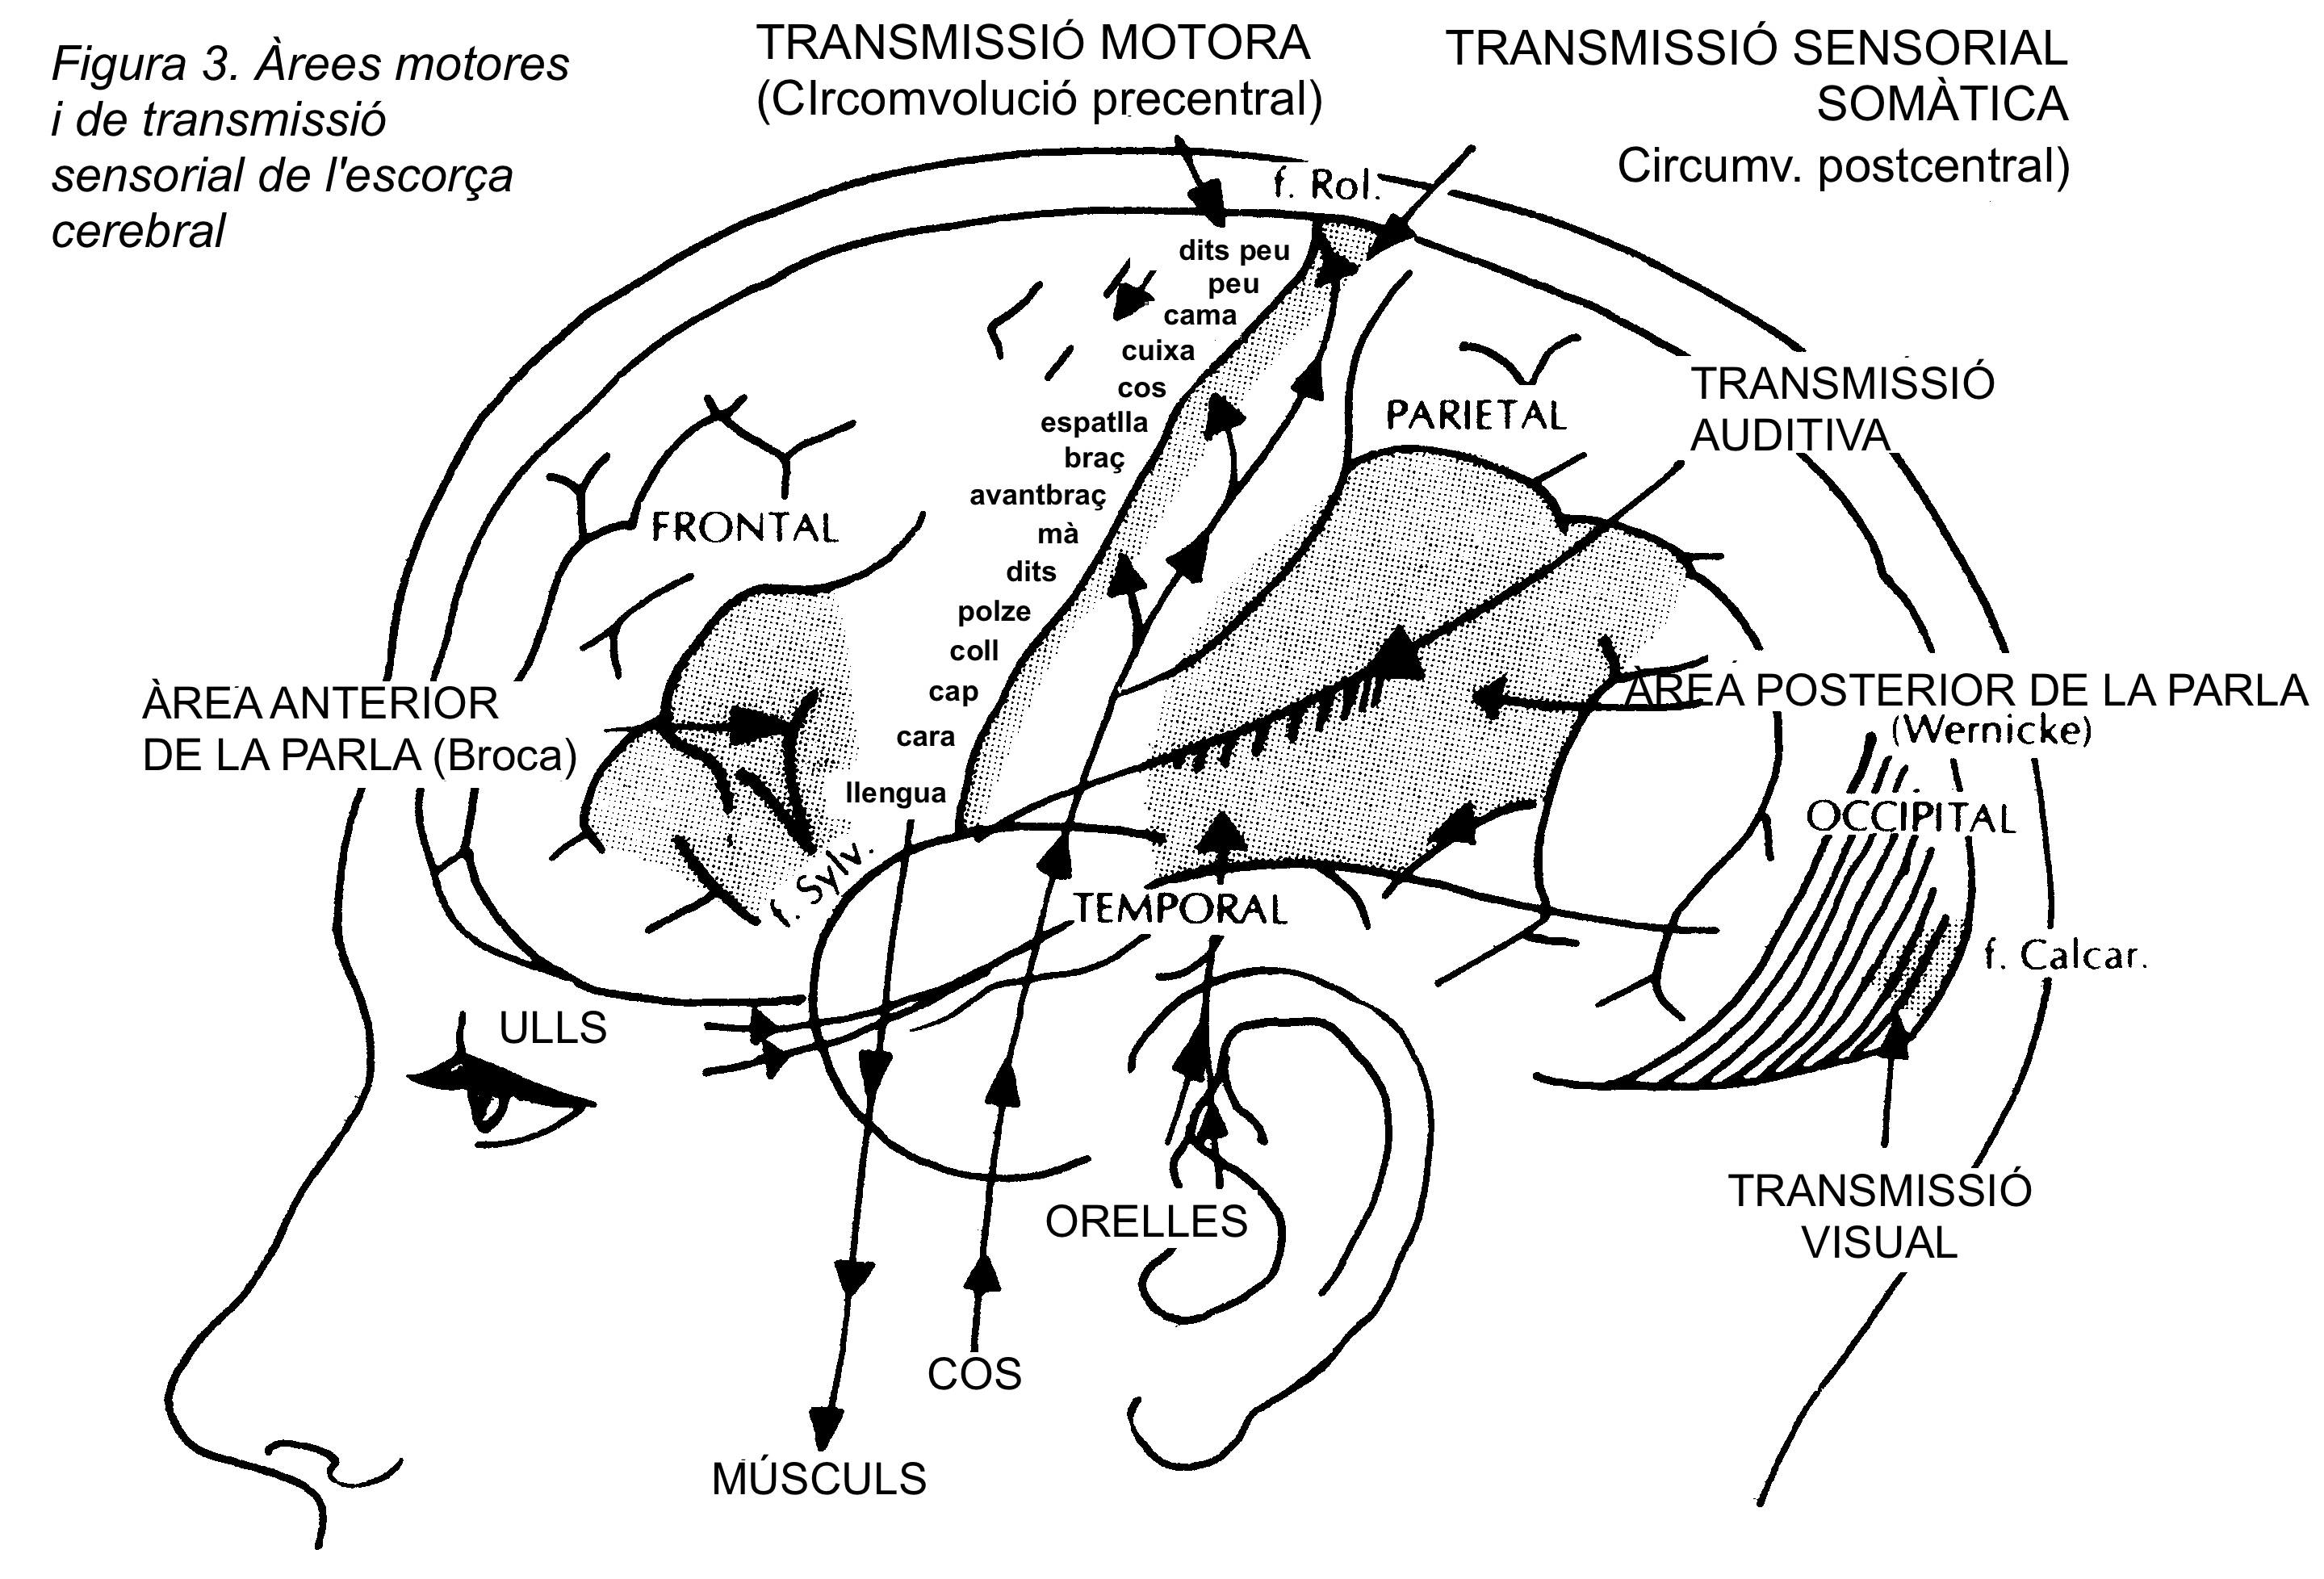 rees de transmissi motores i sensorials
                          de l'escora cerebral